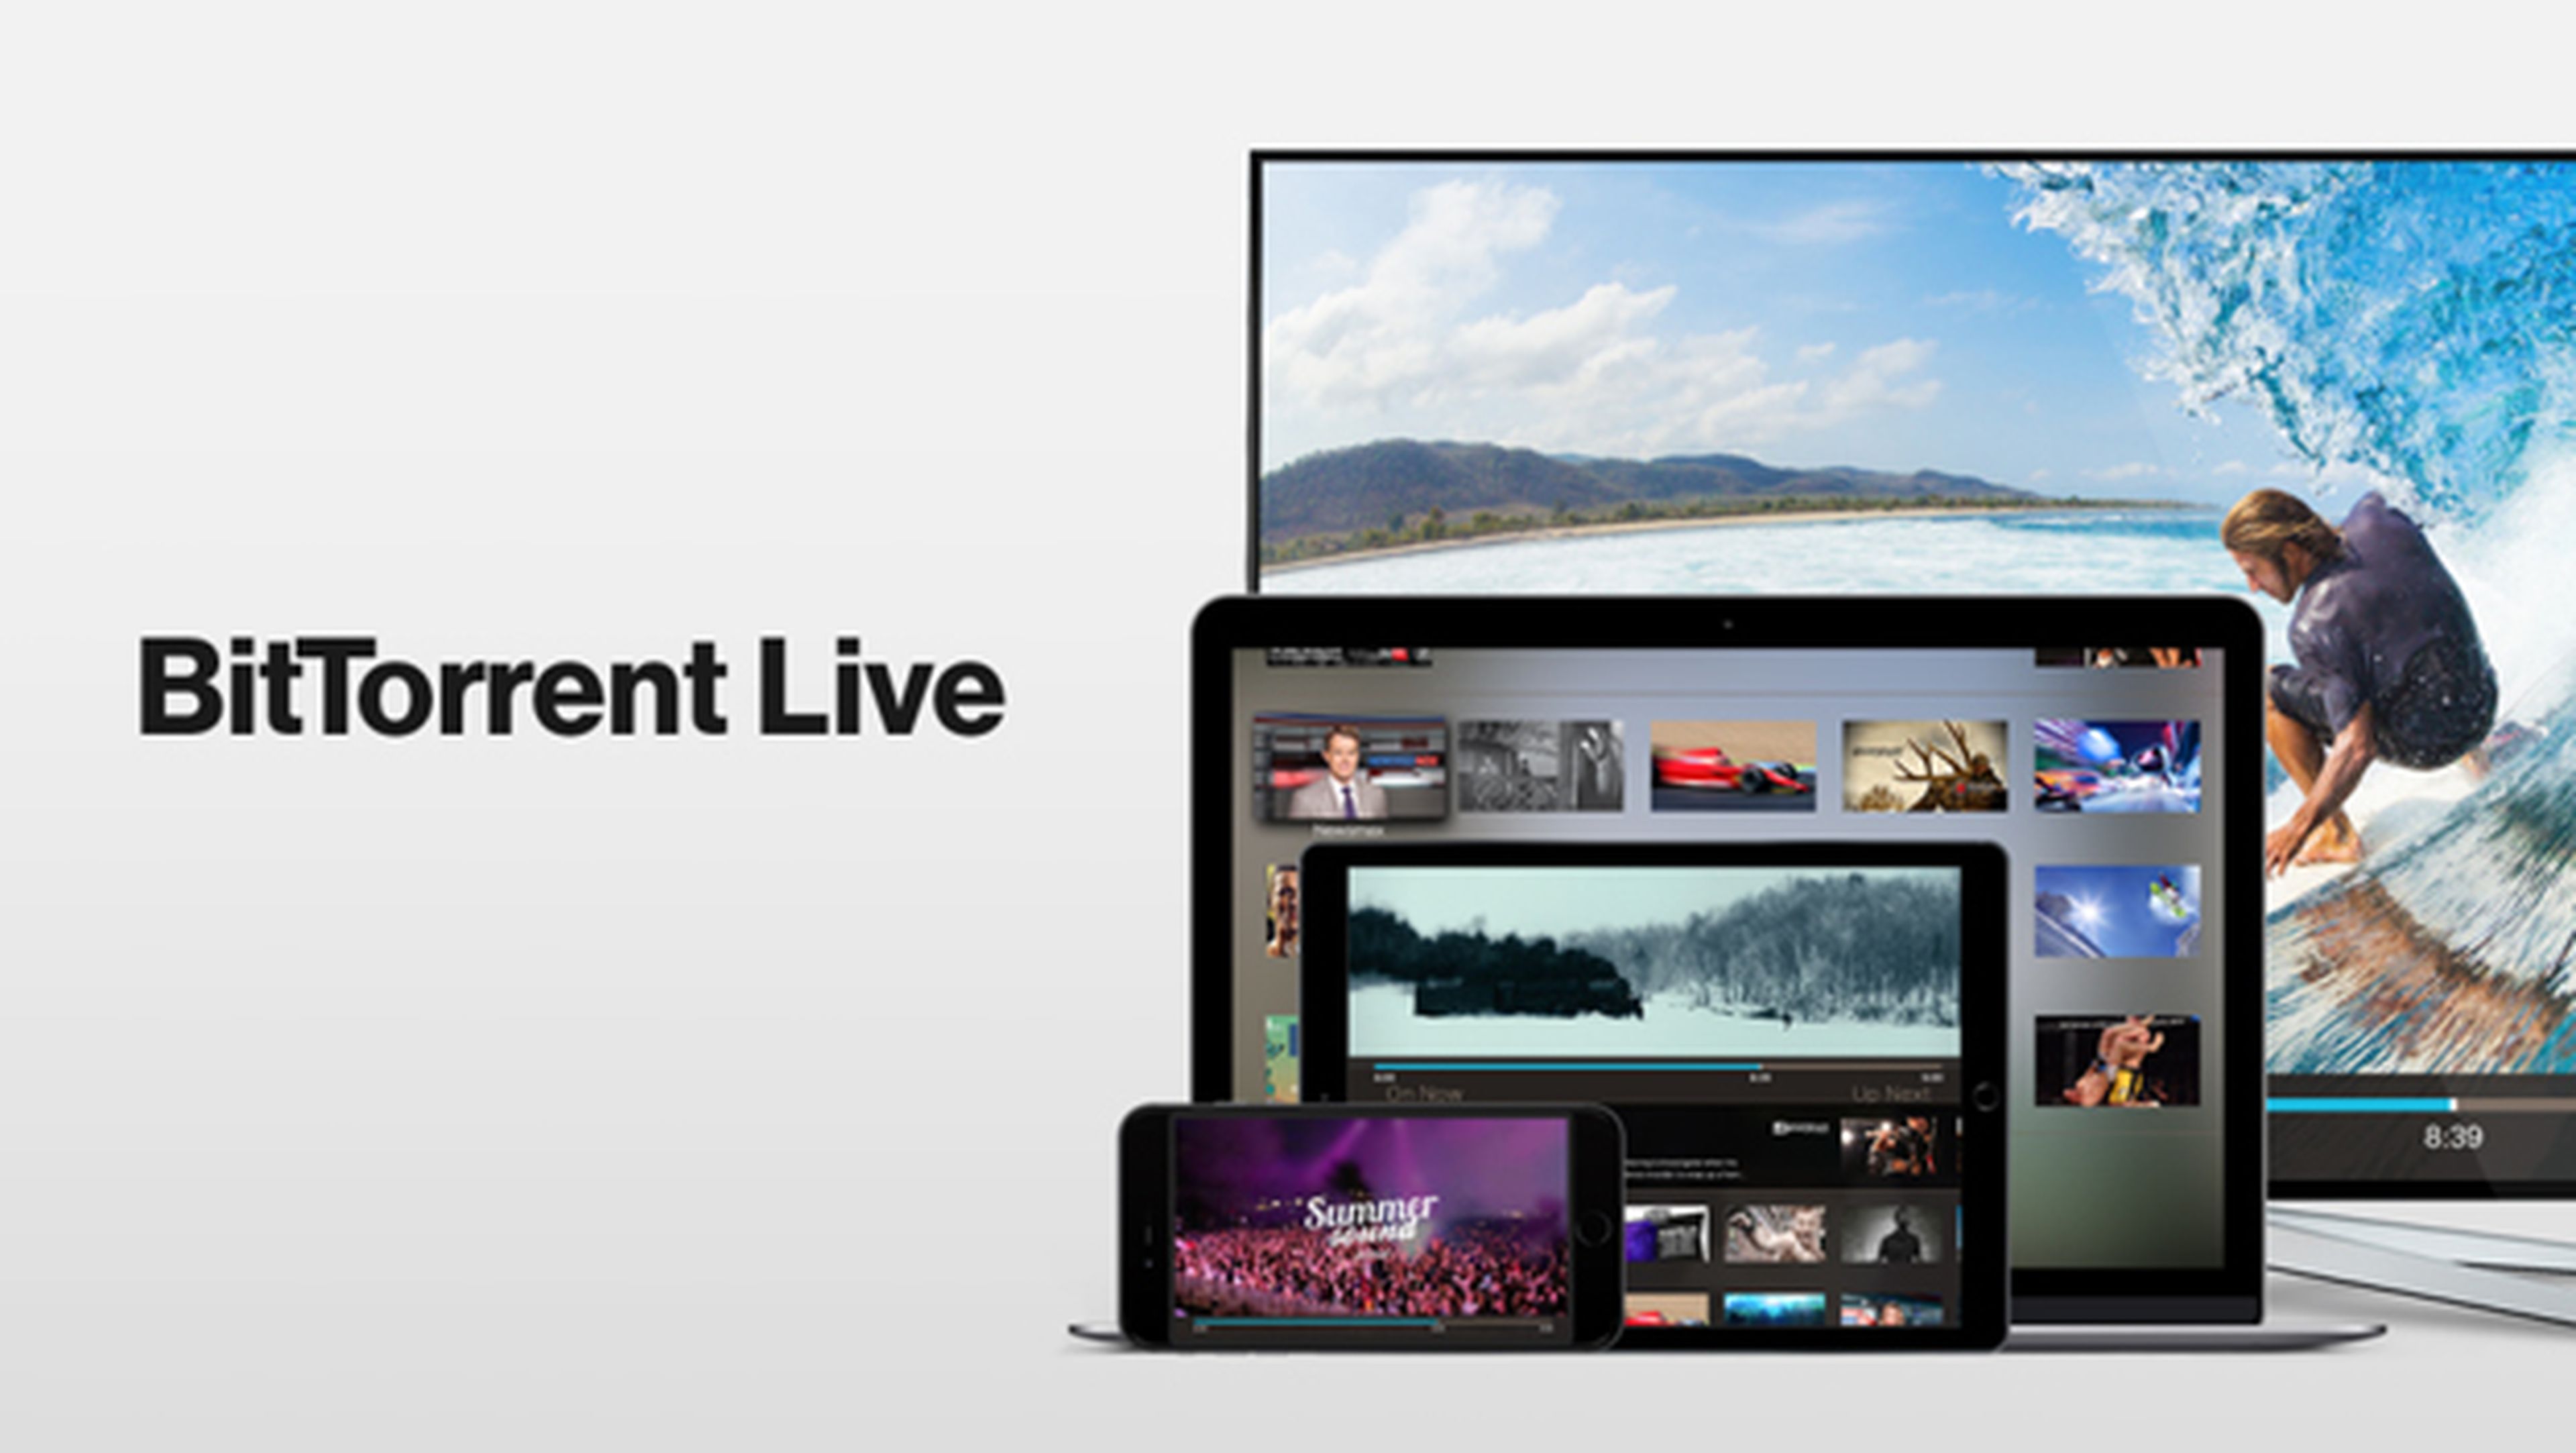 El programa para descargar películas BitTorrent saca una aplicación para ver televisión en Android